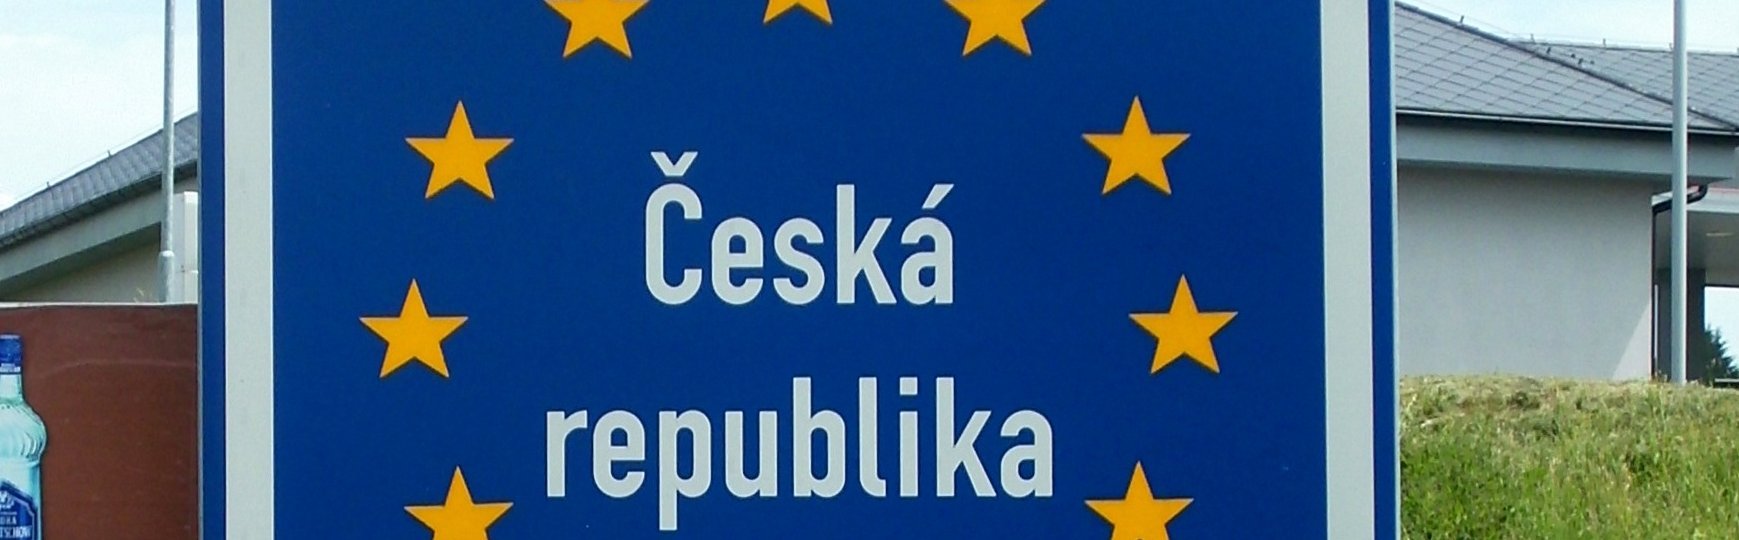 Tschechien Grenzschild